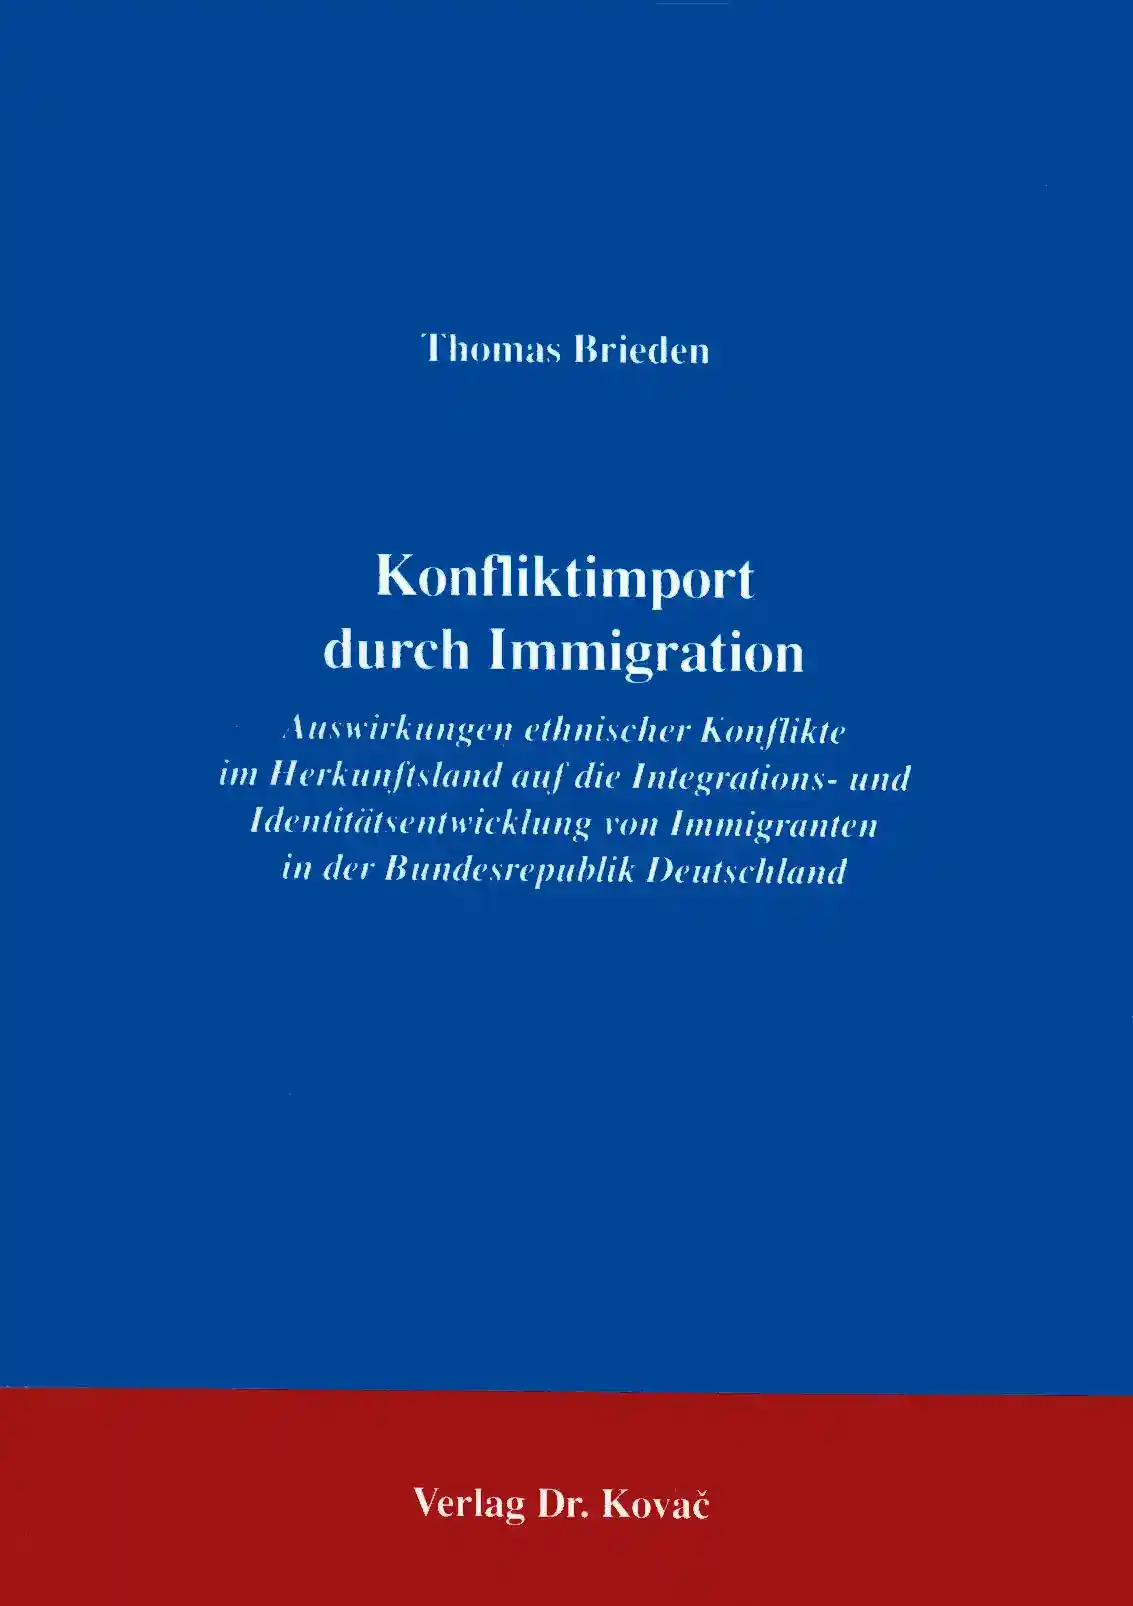 Konfliktimport durch Immigration (Forschungsarbeit)